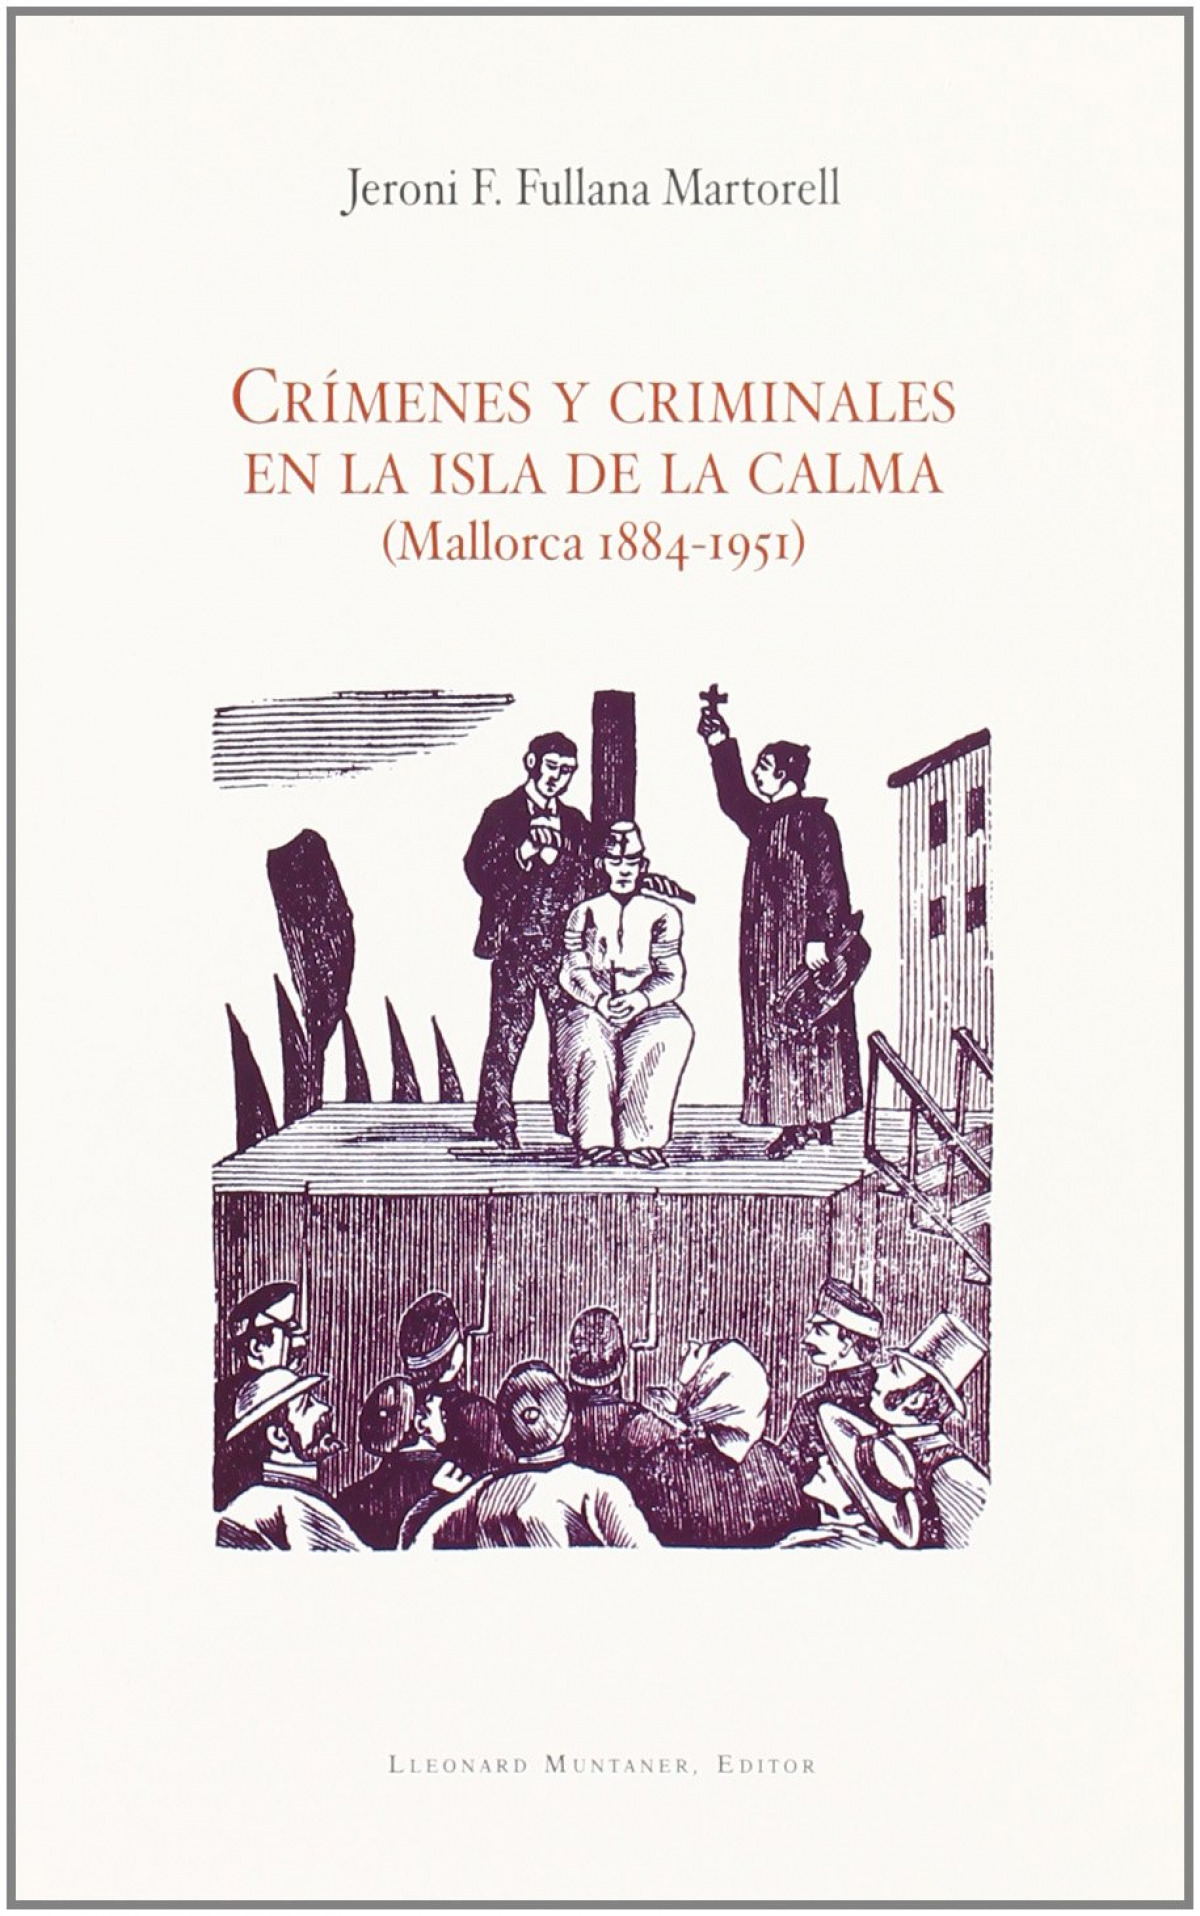 CrÍmenes y criminales en la isla de la calma - Jeroni F.Fullana Martorell